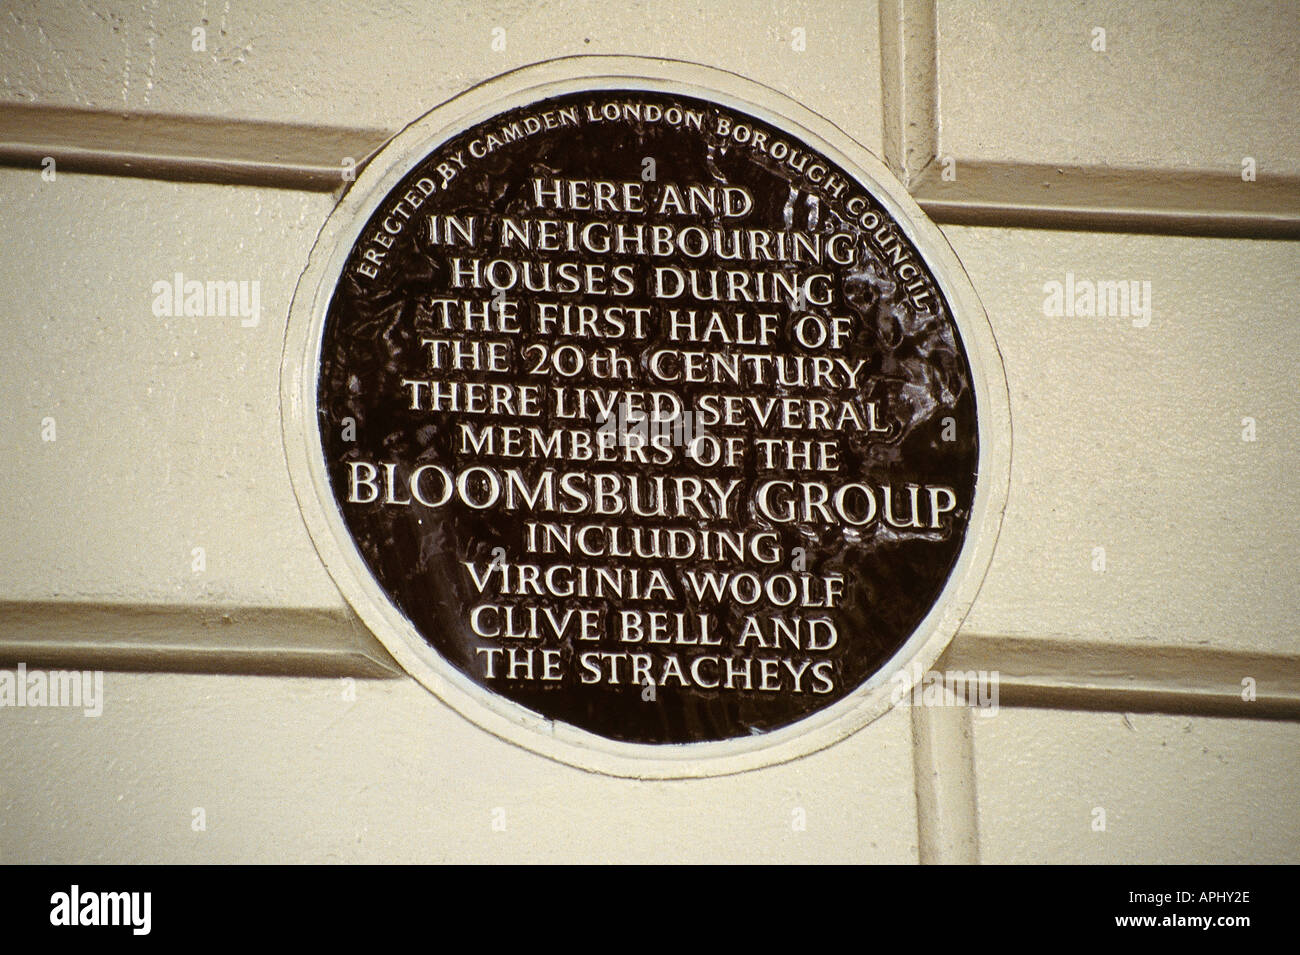 Plaque à plusieurs membres du Bloomsbury Group qui ont vécu dans la région au cours de la première moitié du 20e siècle Angleterre Londres Banque D'Images